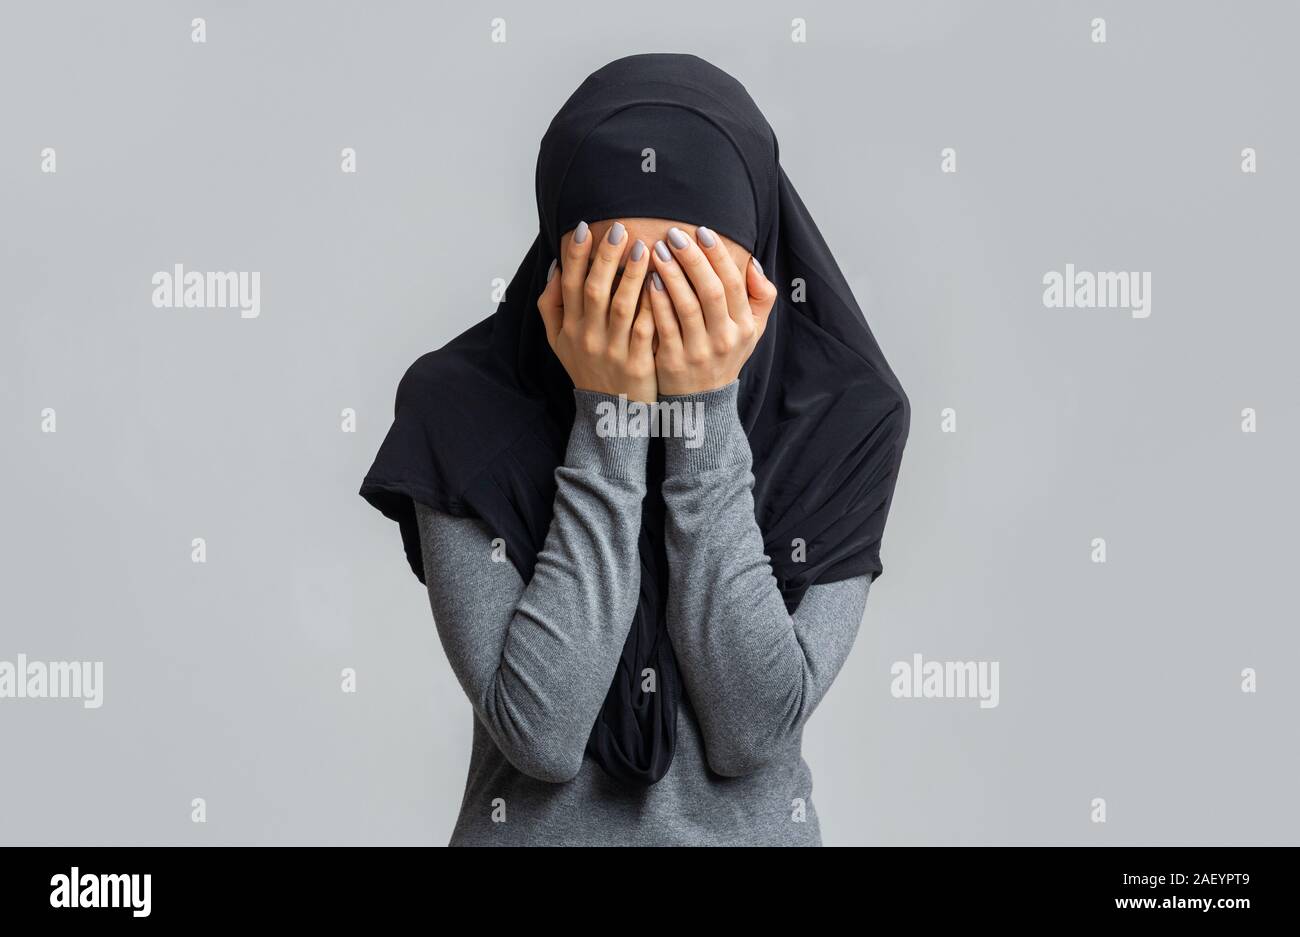 Islamophobie und Diskriminierung muslimischer Frauen Konzept. Frau in Schwarz hijab für Gesicht, Hände, posierend über Graues studio Hintergrund Stockfoto